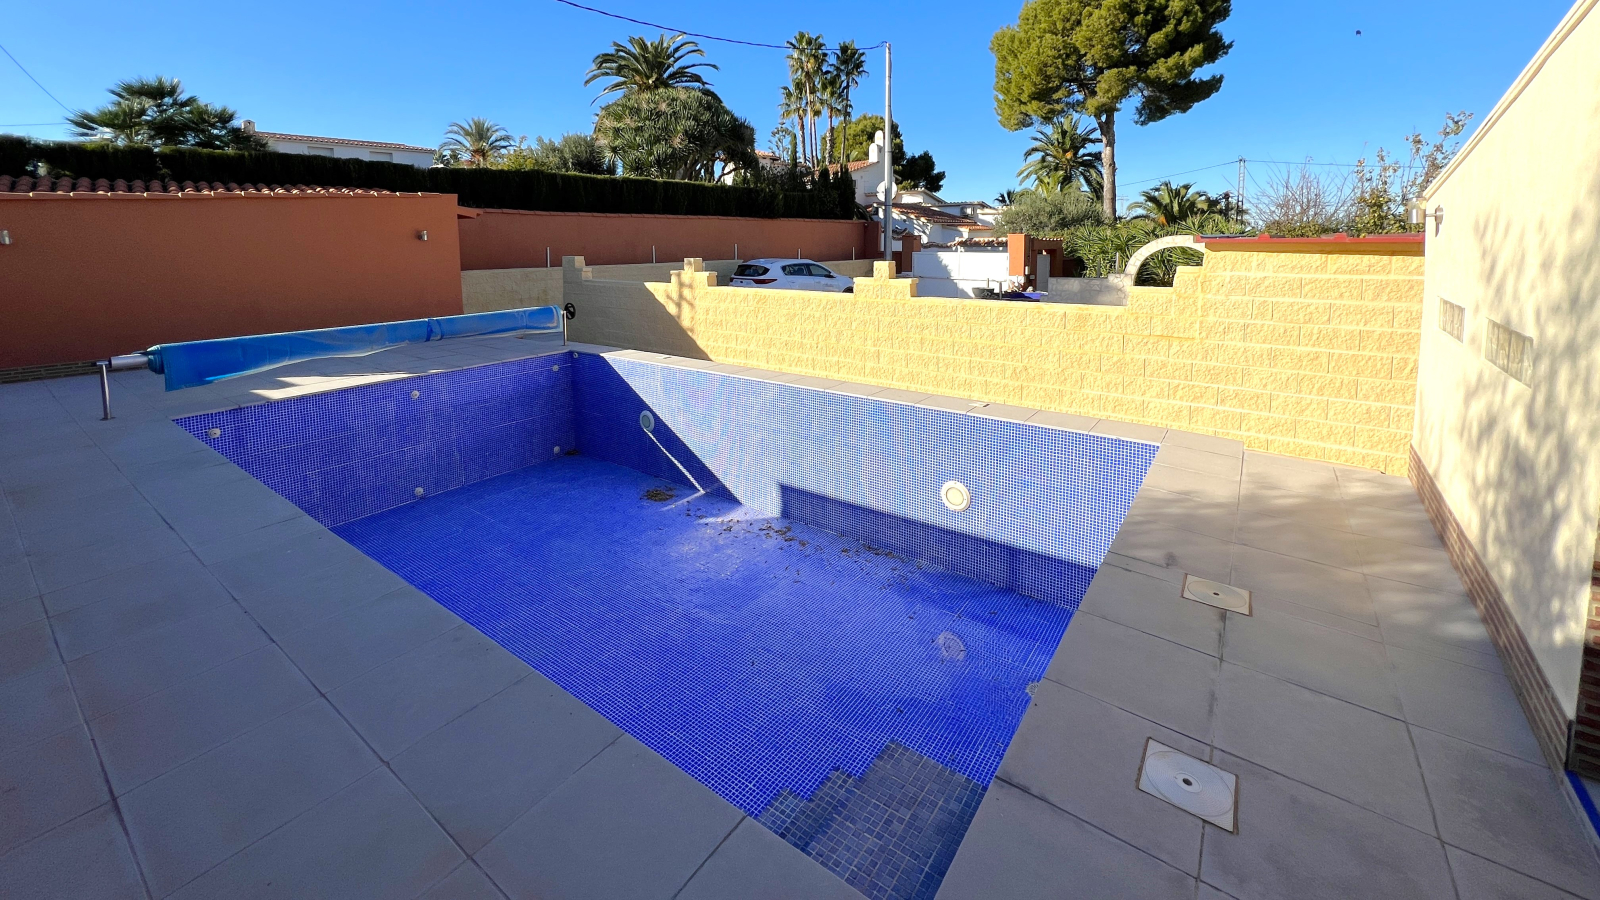 Villa in ruhiger Lage mit hoher technischer Ausstattung, beheizbarem Pool, Garage, etc.